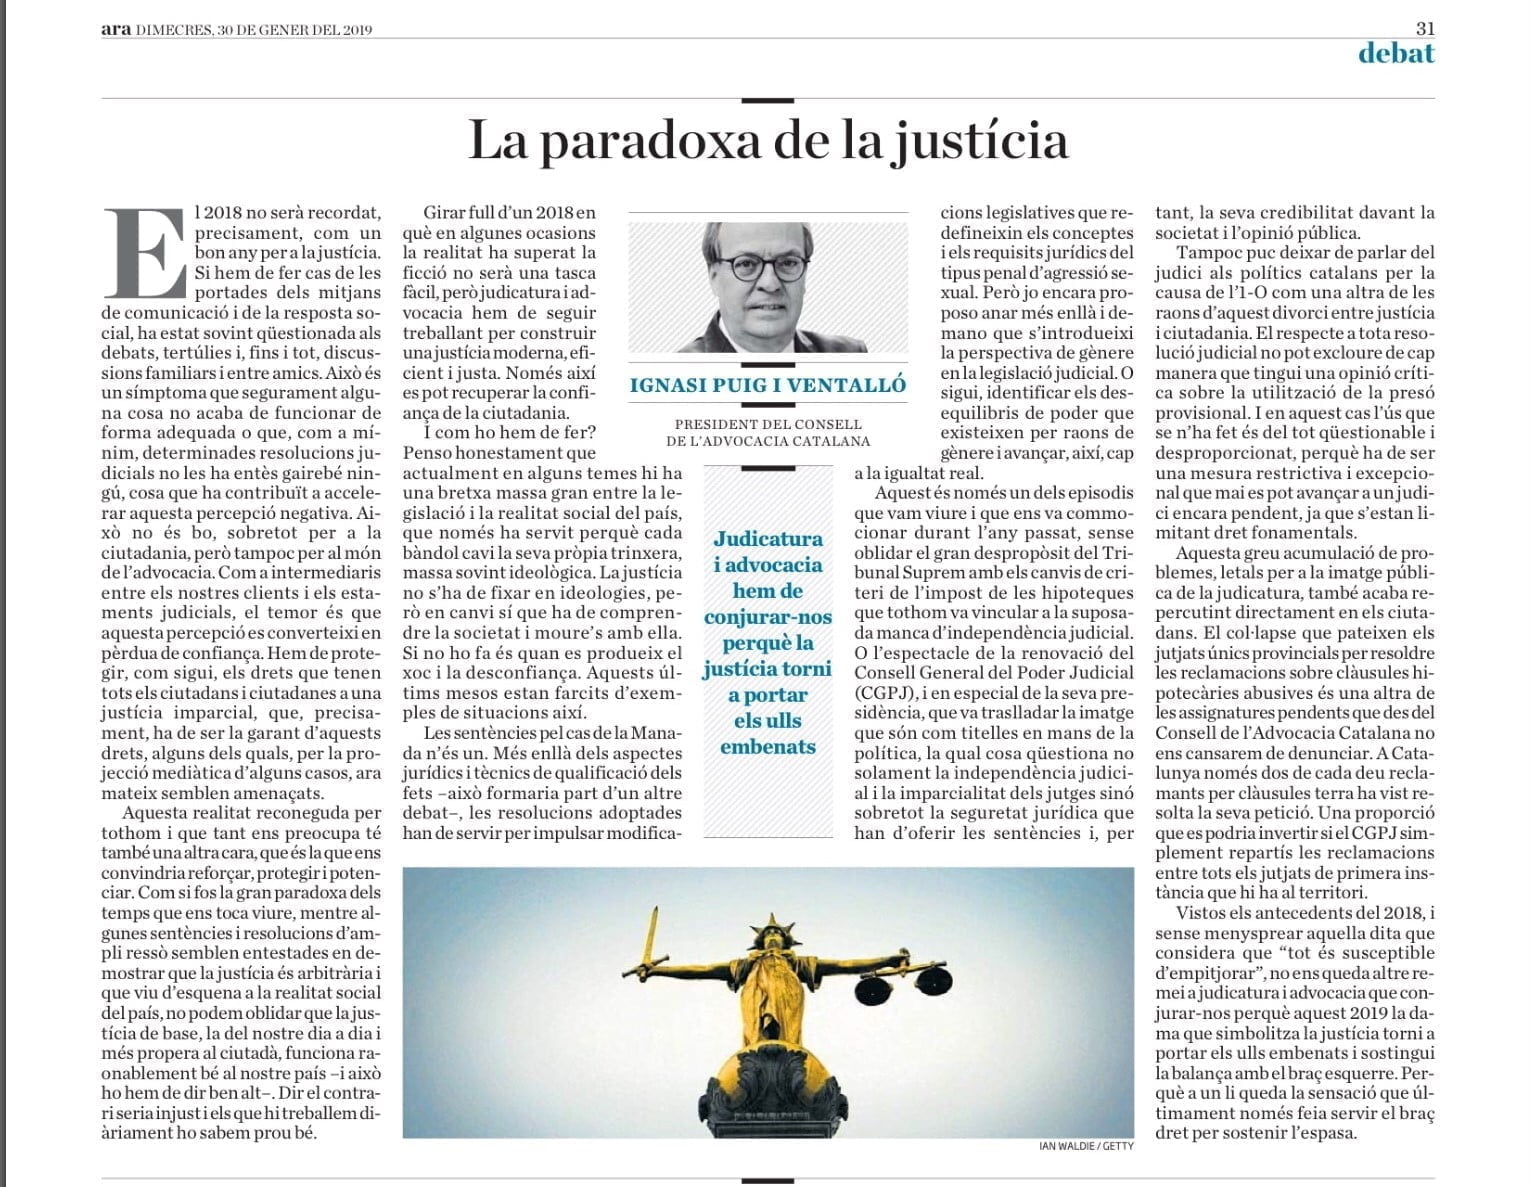 Article d'opinió president del Consell de l'Advocacia Ignasi Puig Ventalló, al Diari - Consell de l'Advocacia Catalana